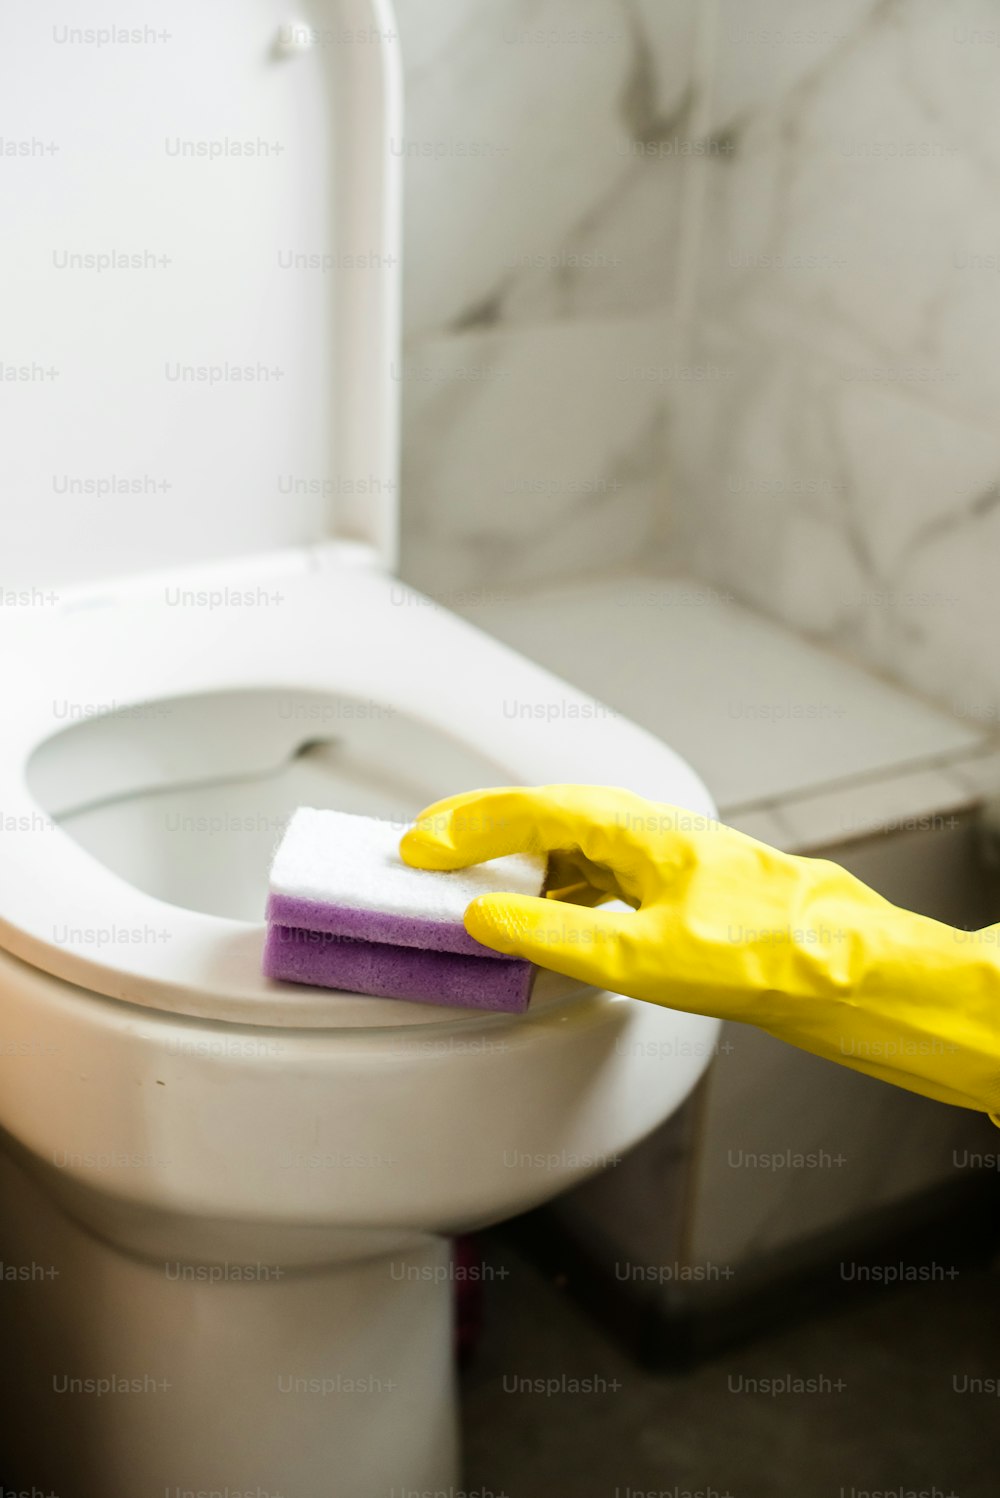 uma pessoa com luvas de borracha amarelas limpando um vaso sanitário